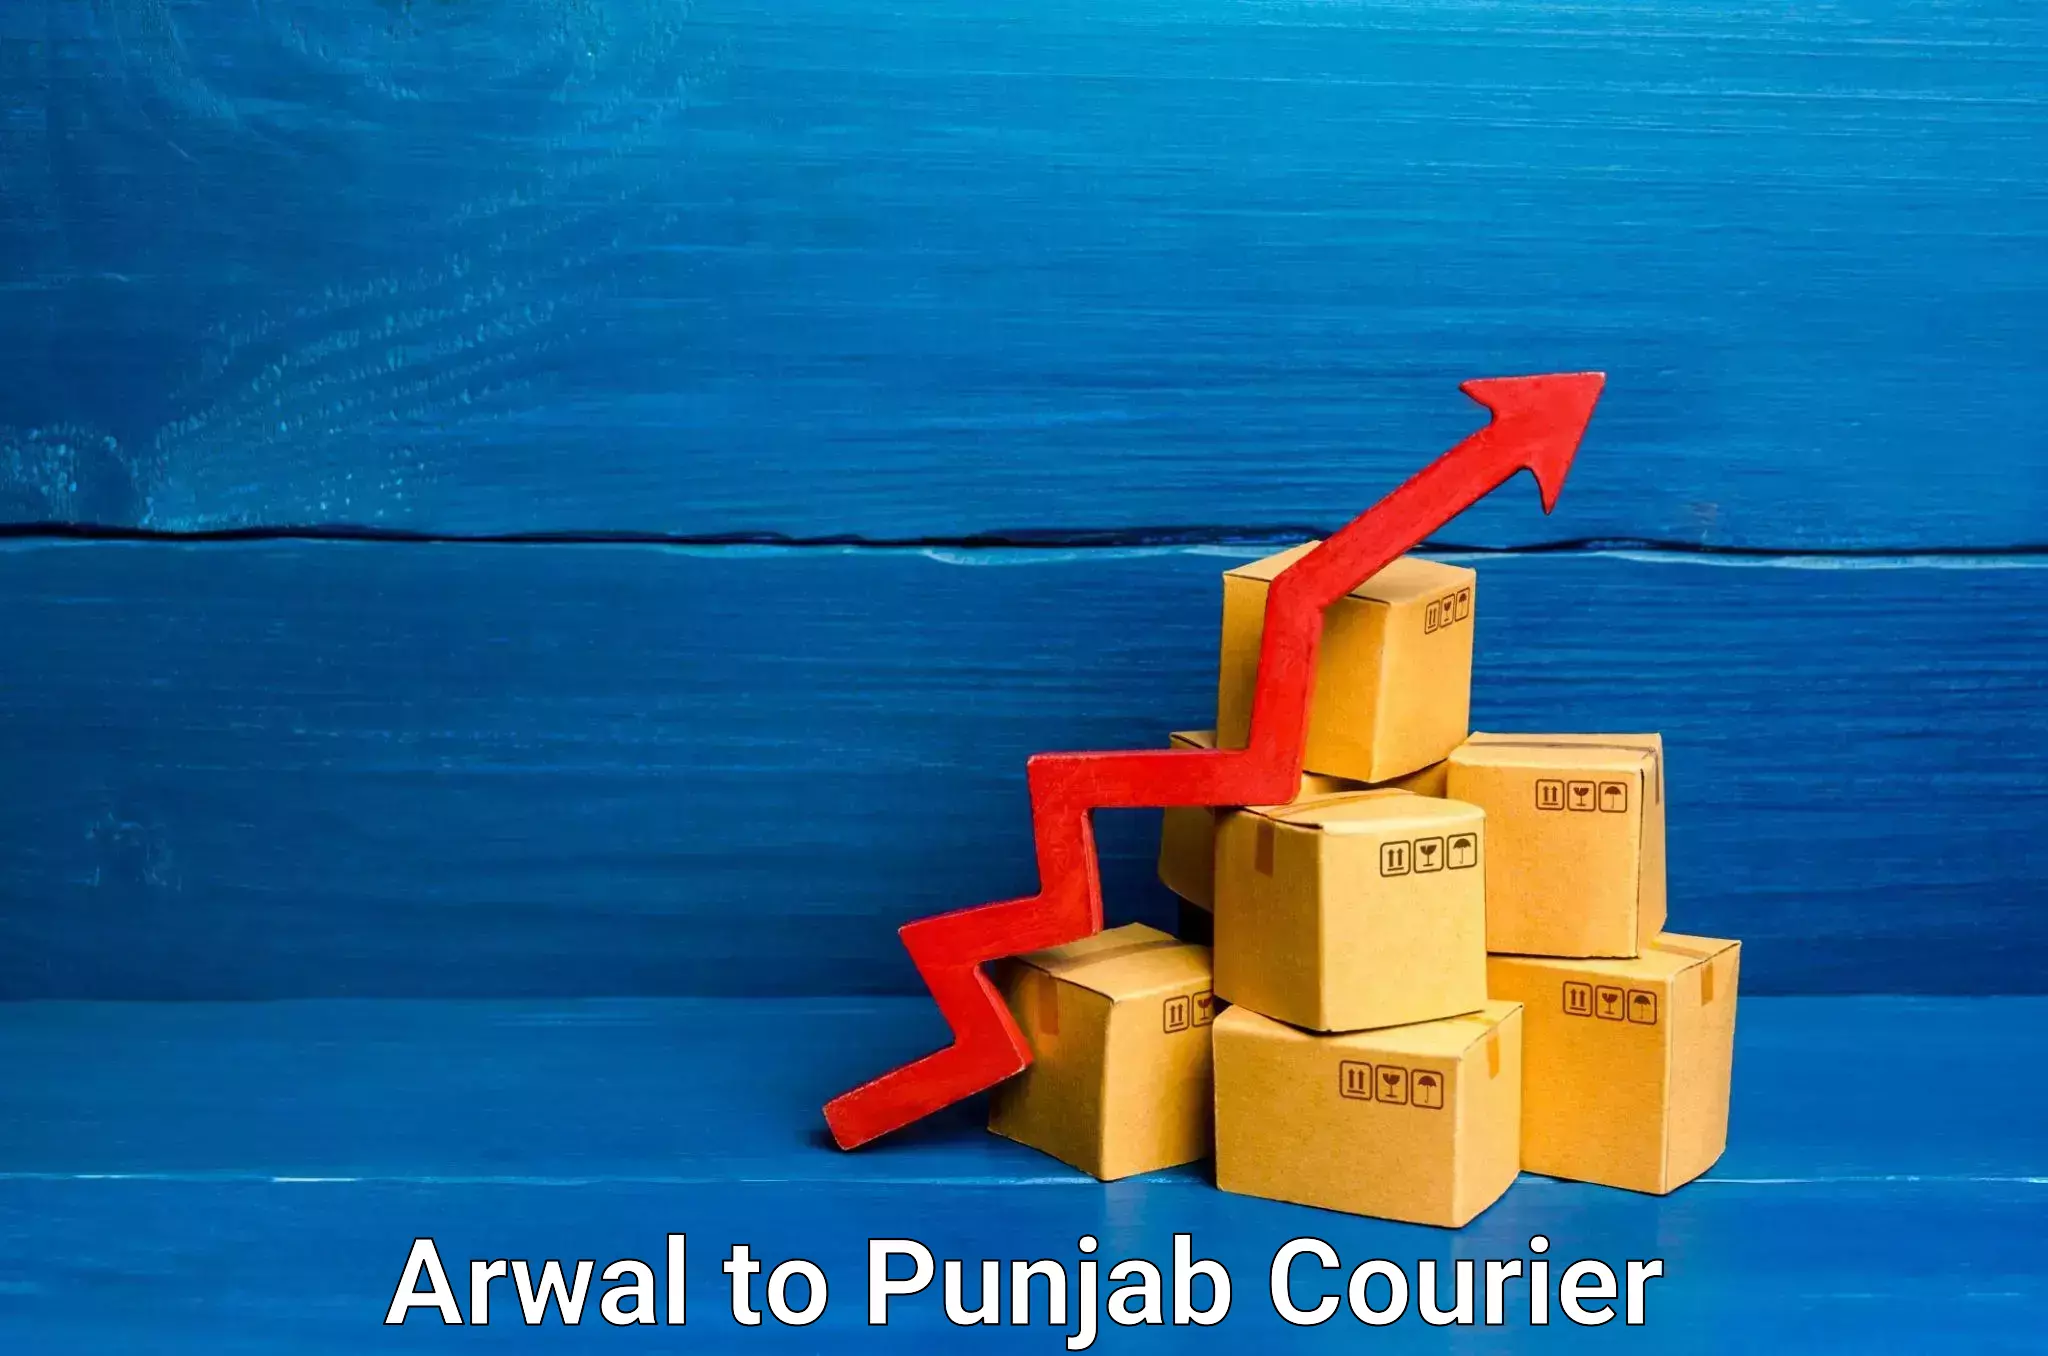 Furniture transport service Arwal to Punjab